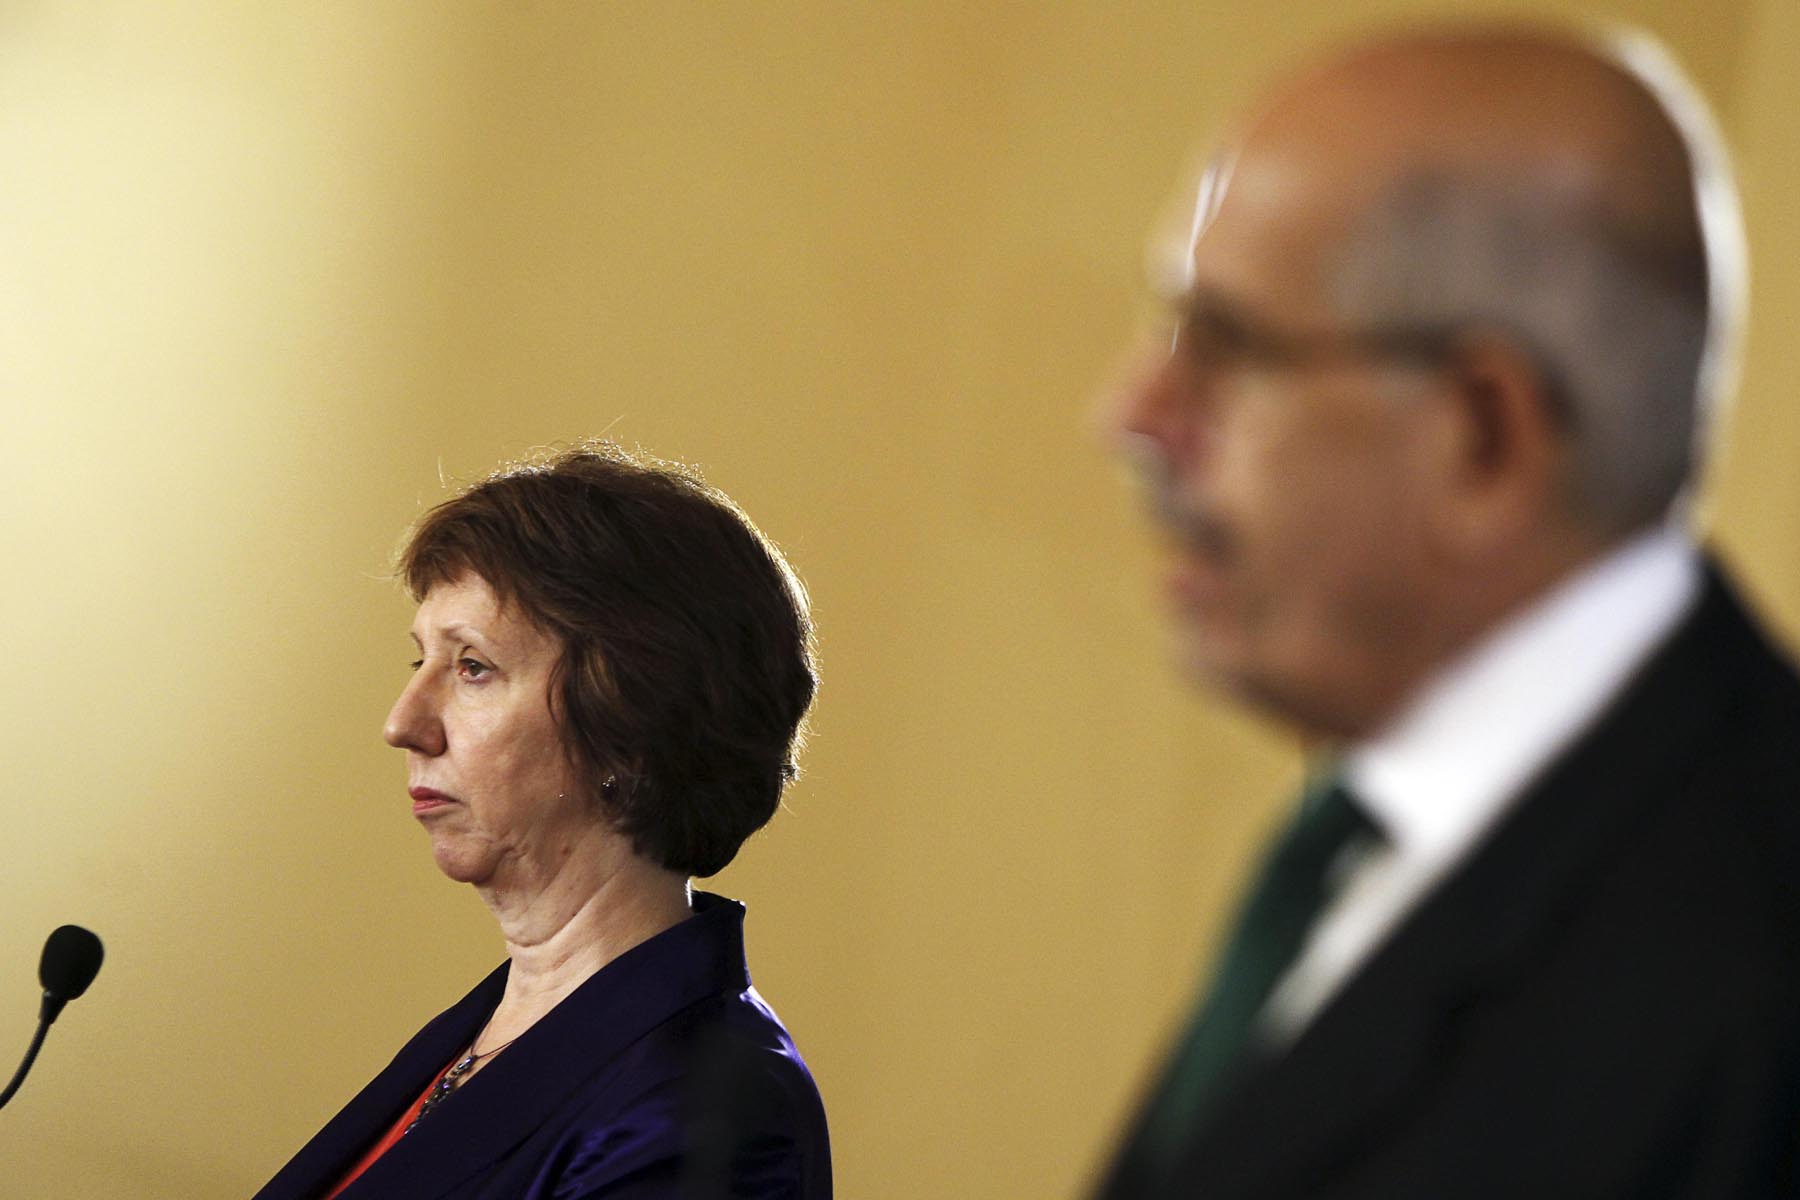 La alta representante de la Unión Europea para Asuntos Exteriores, Catherine Ashton, se reunió anoch